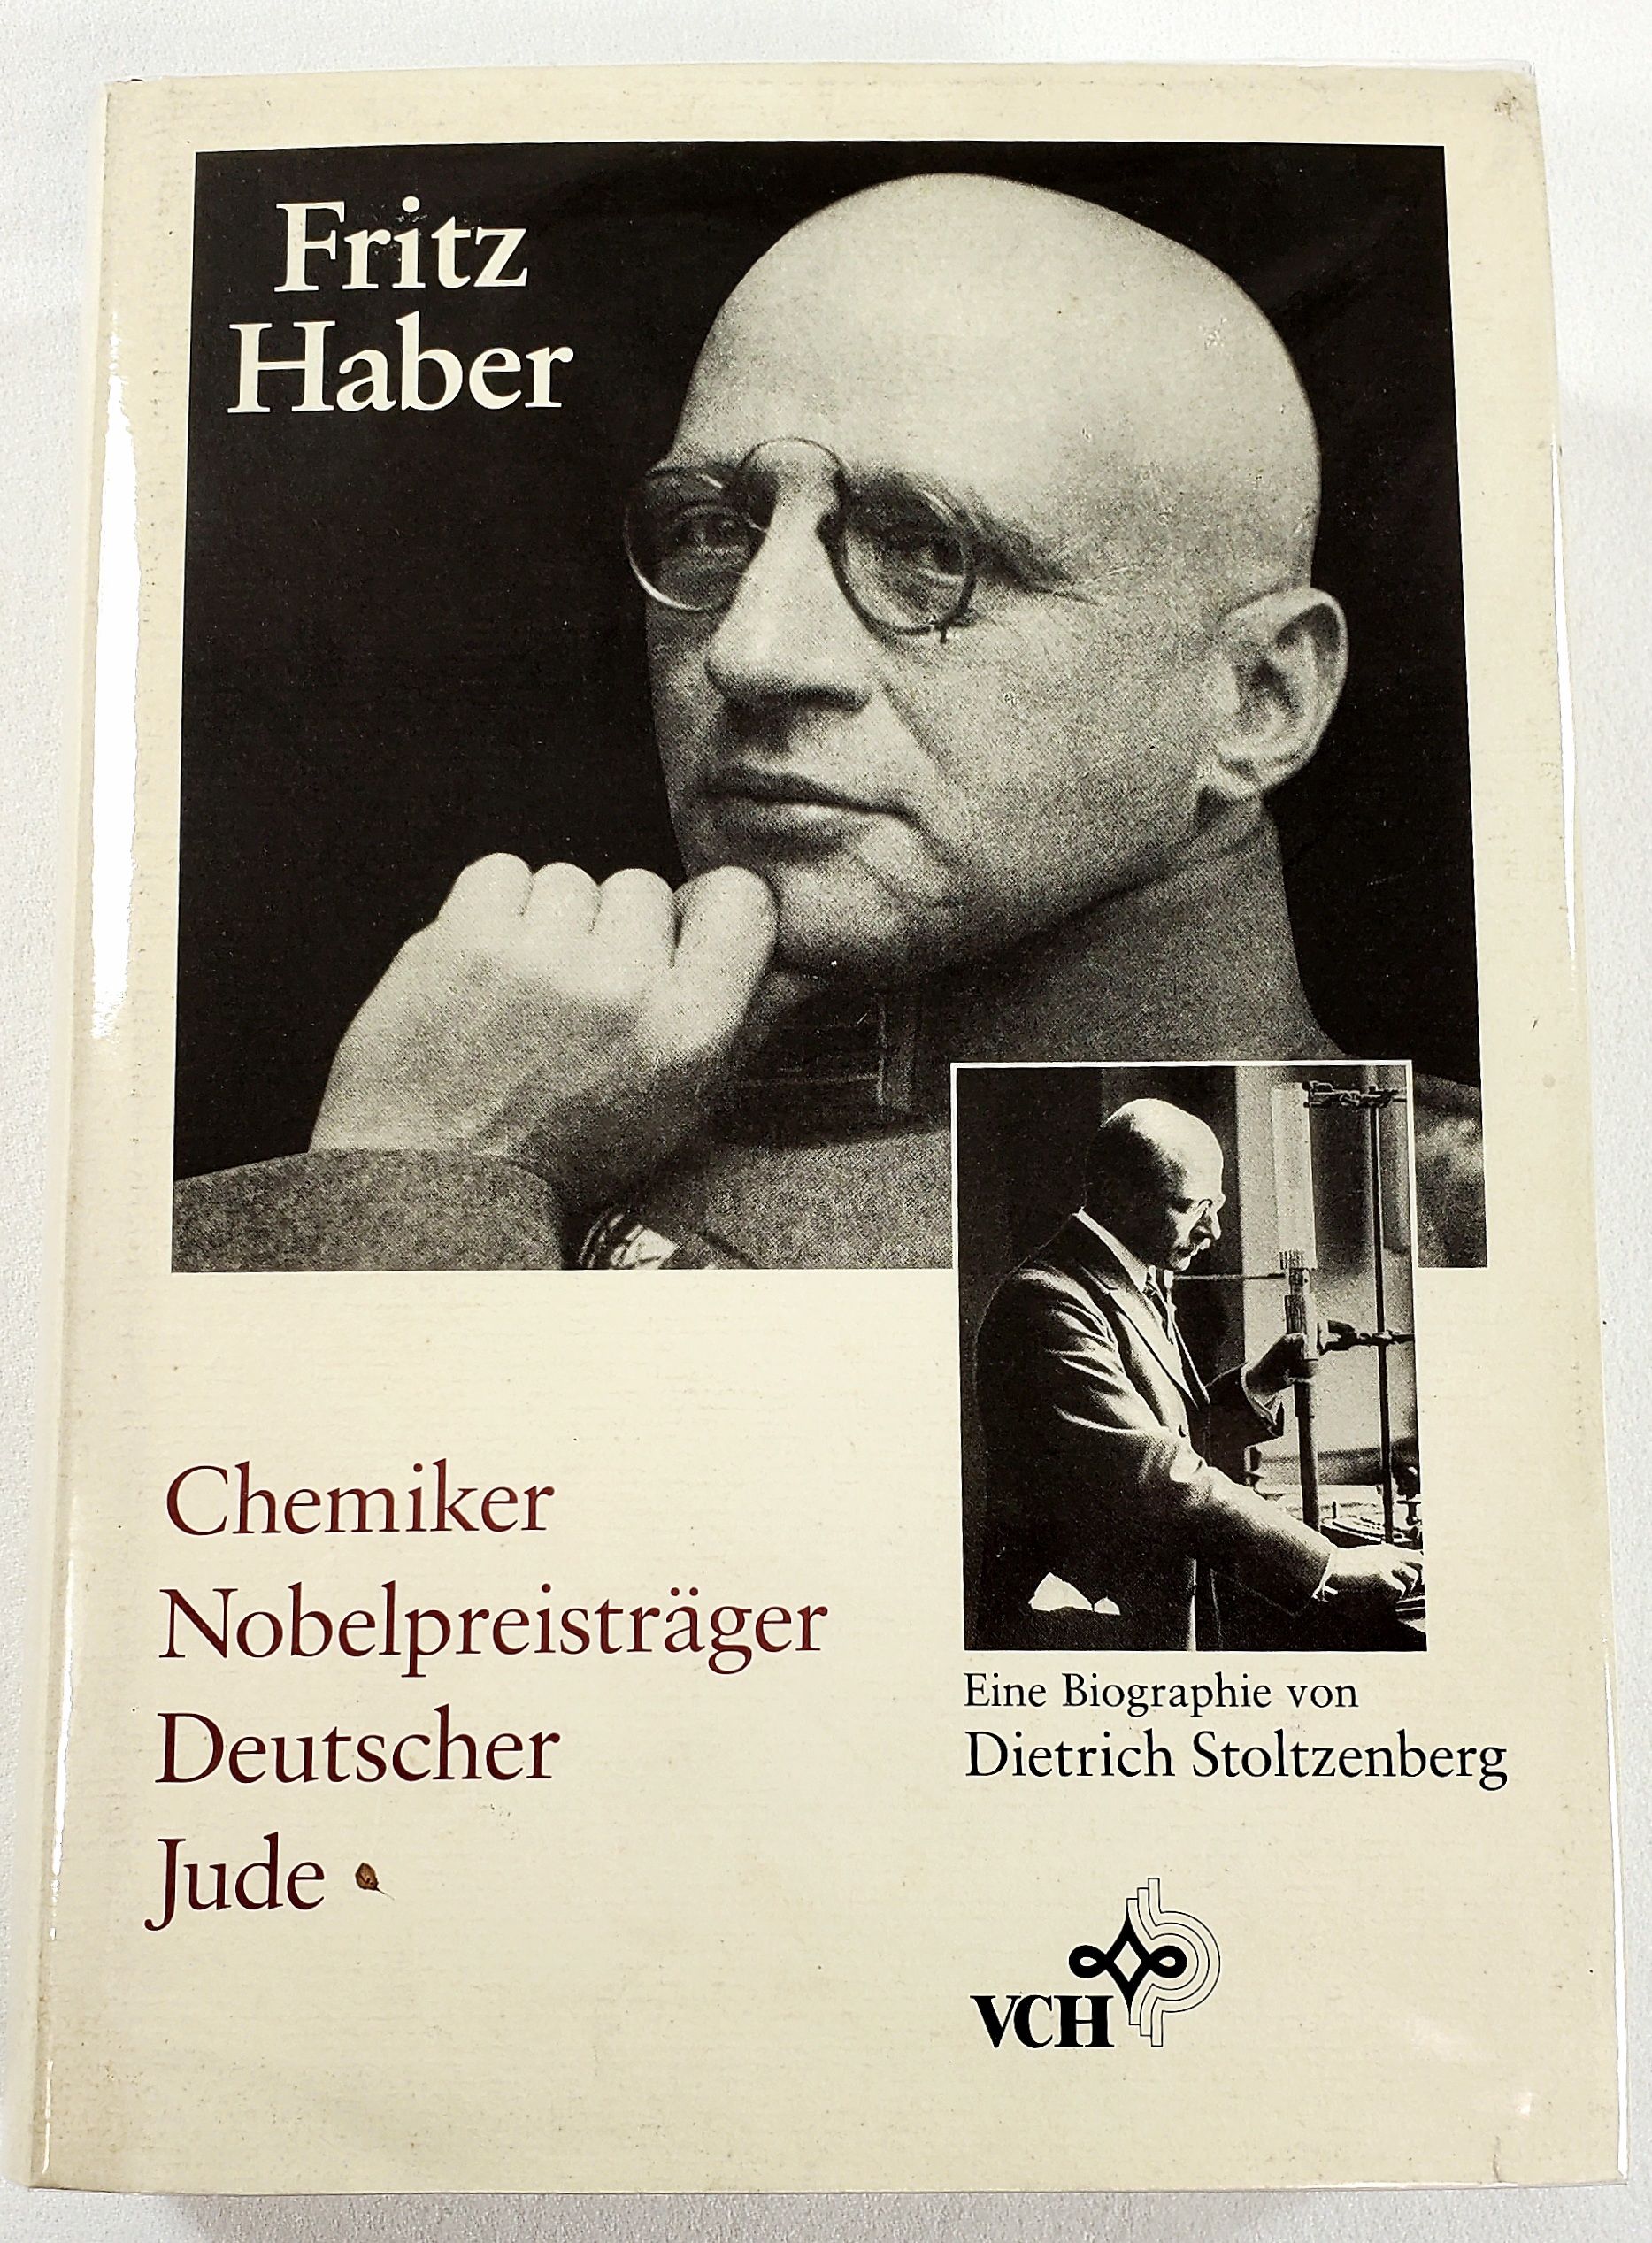 Fritz Haber: Chemiker, NobelpreistrÃ¤ger, Deutscher, Jude (German Edition) - Stoltzenberg, Dietrich